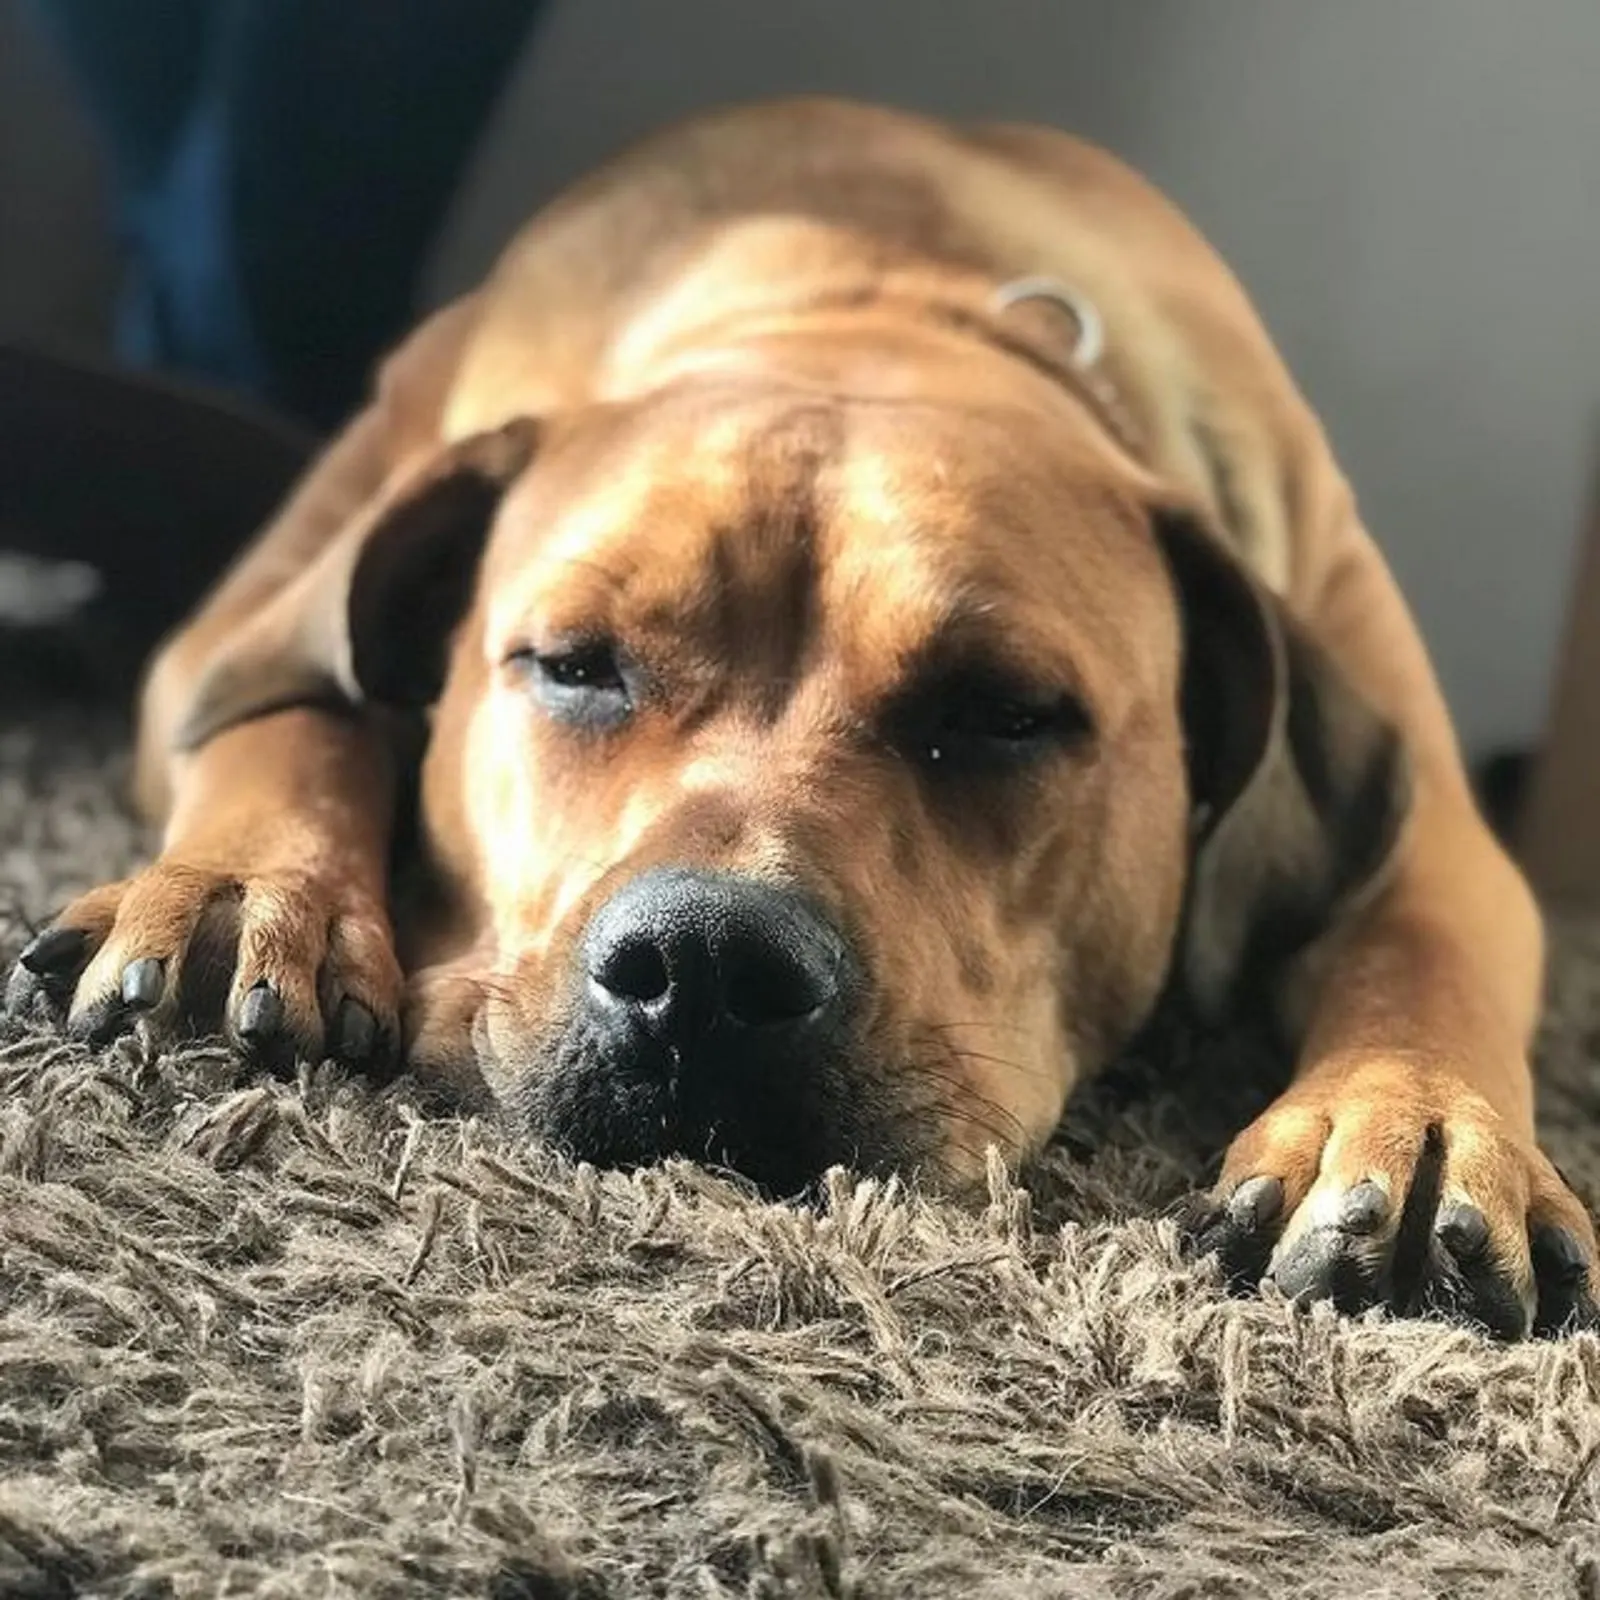 boerboel rottweiler sleeping on the carpet